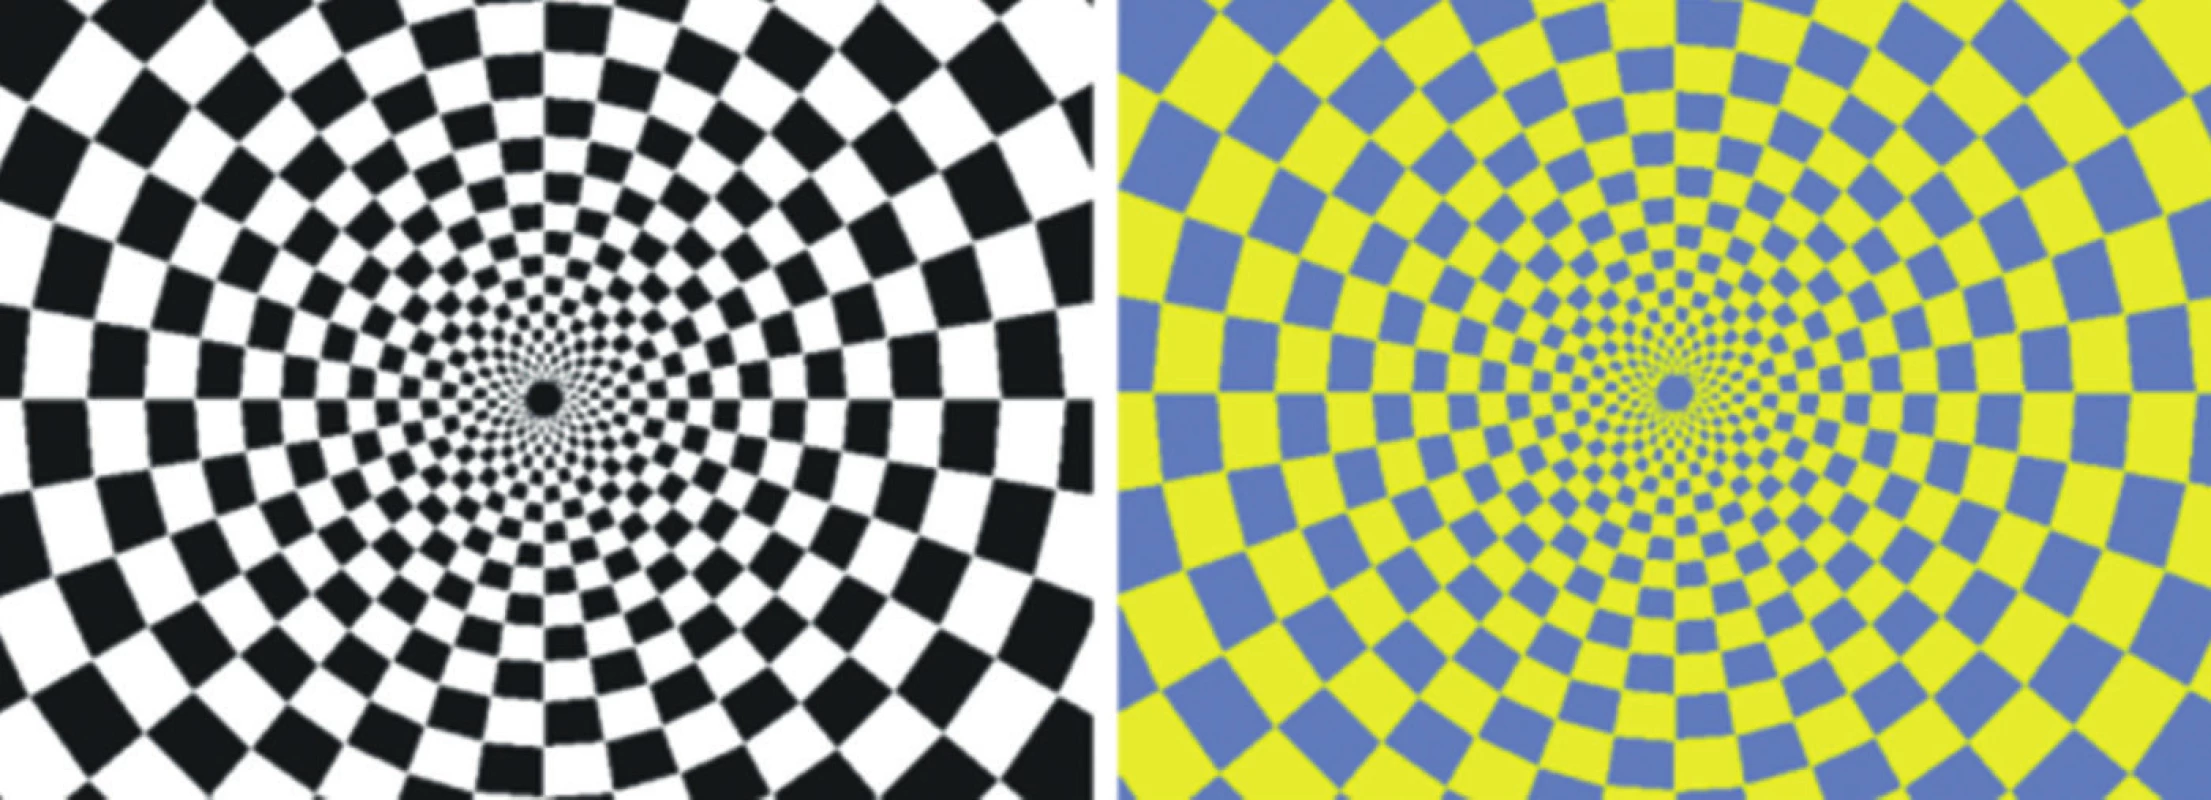 Šachovnicové pole černo-bílé stimulace (a) a žluto-modré stimulace (b). Během stimulace dochází k alternaci šachovnicového pole s jeho inverzí o frekvenci 2 Hz